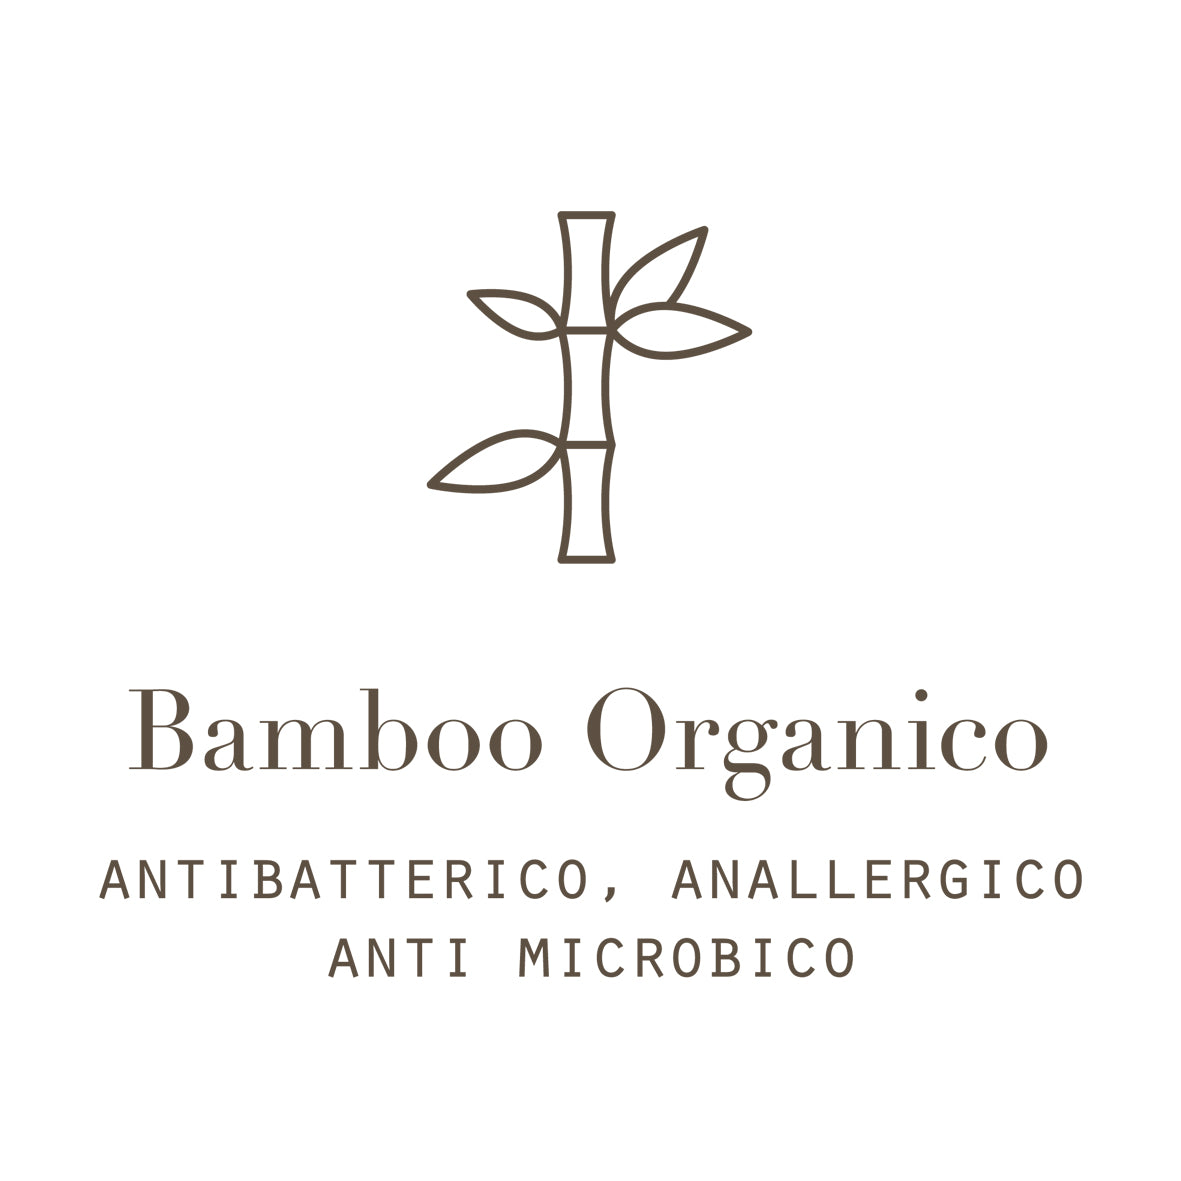 Bamboo Organico